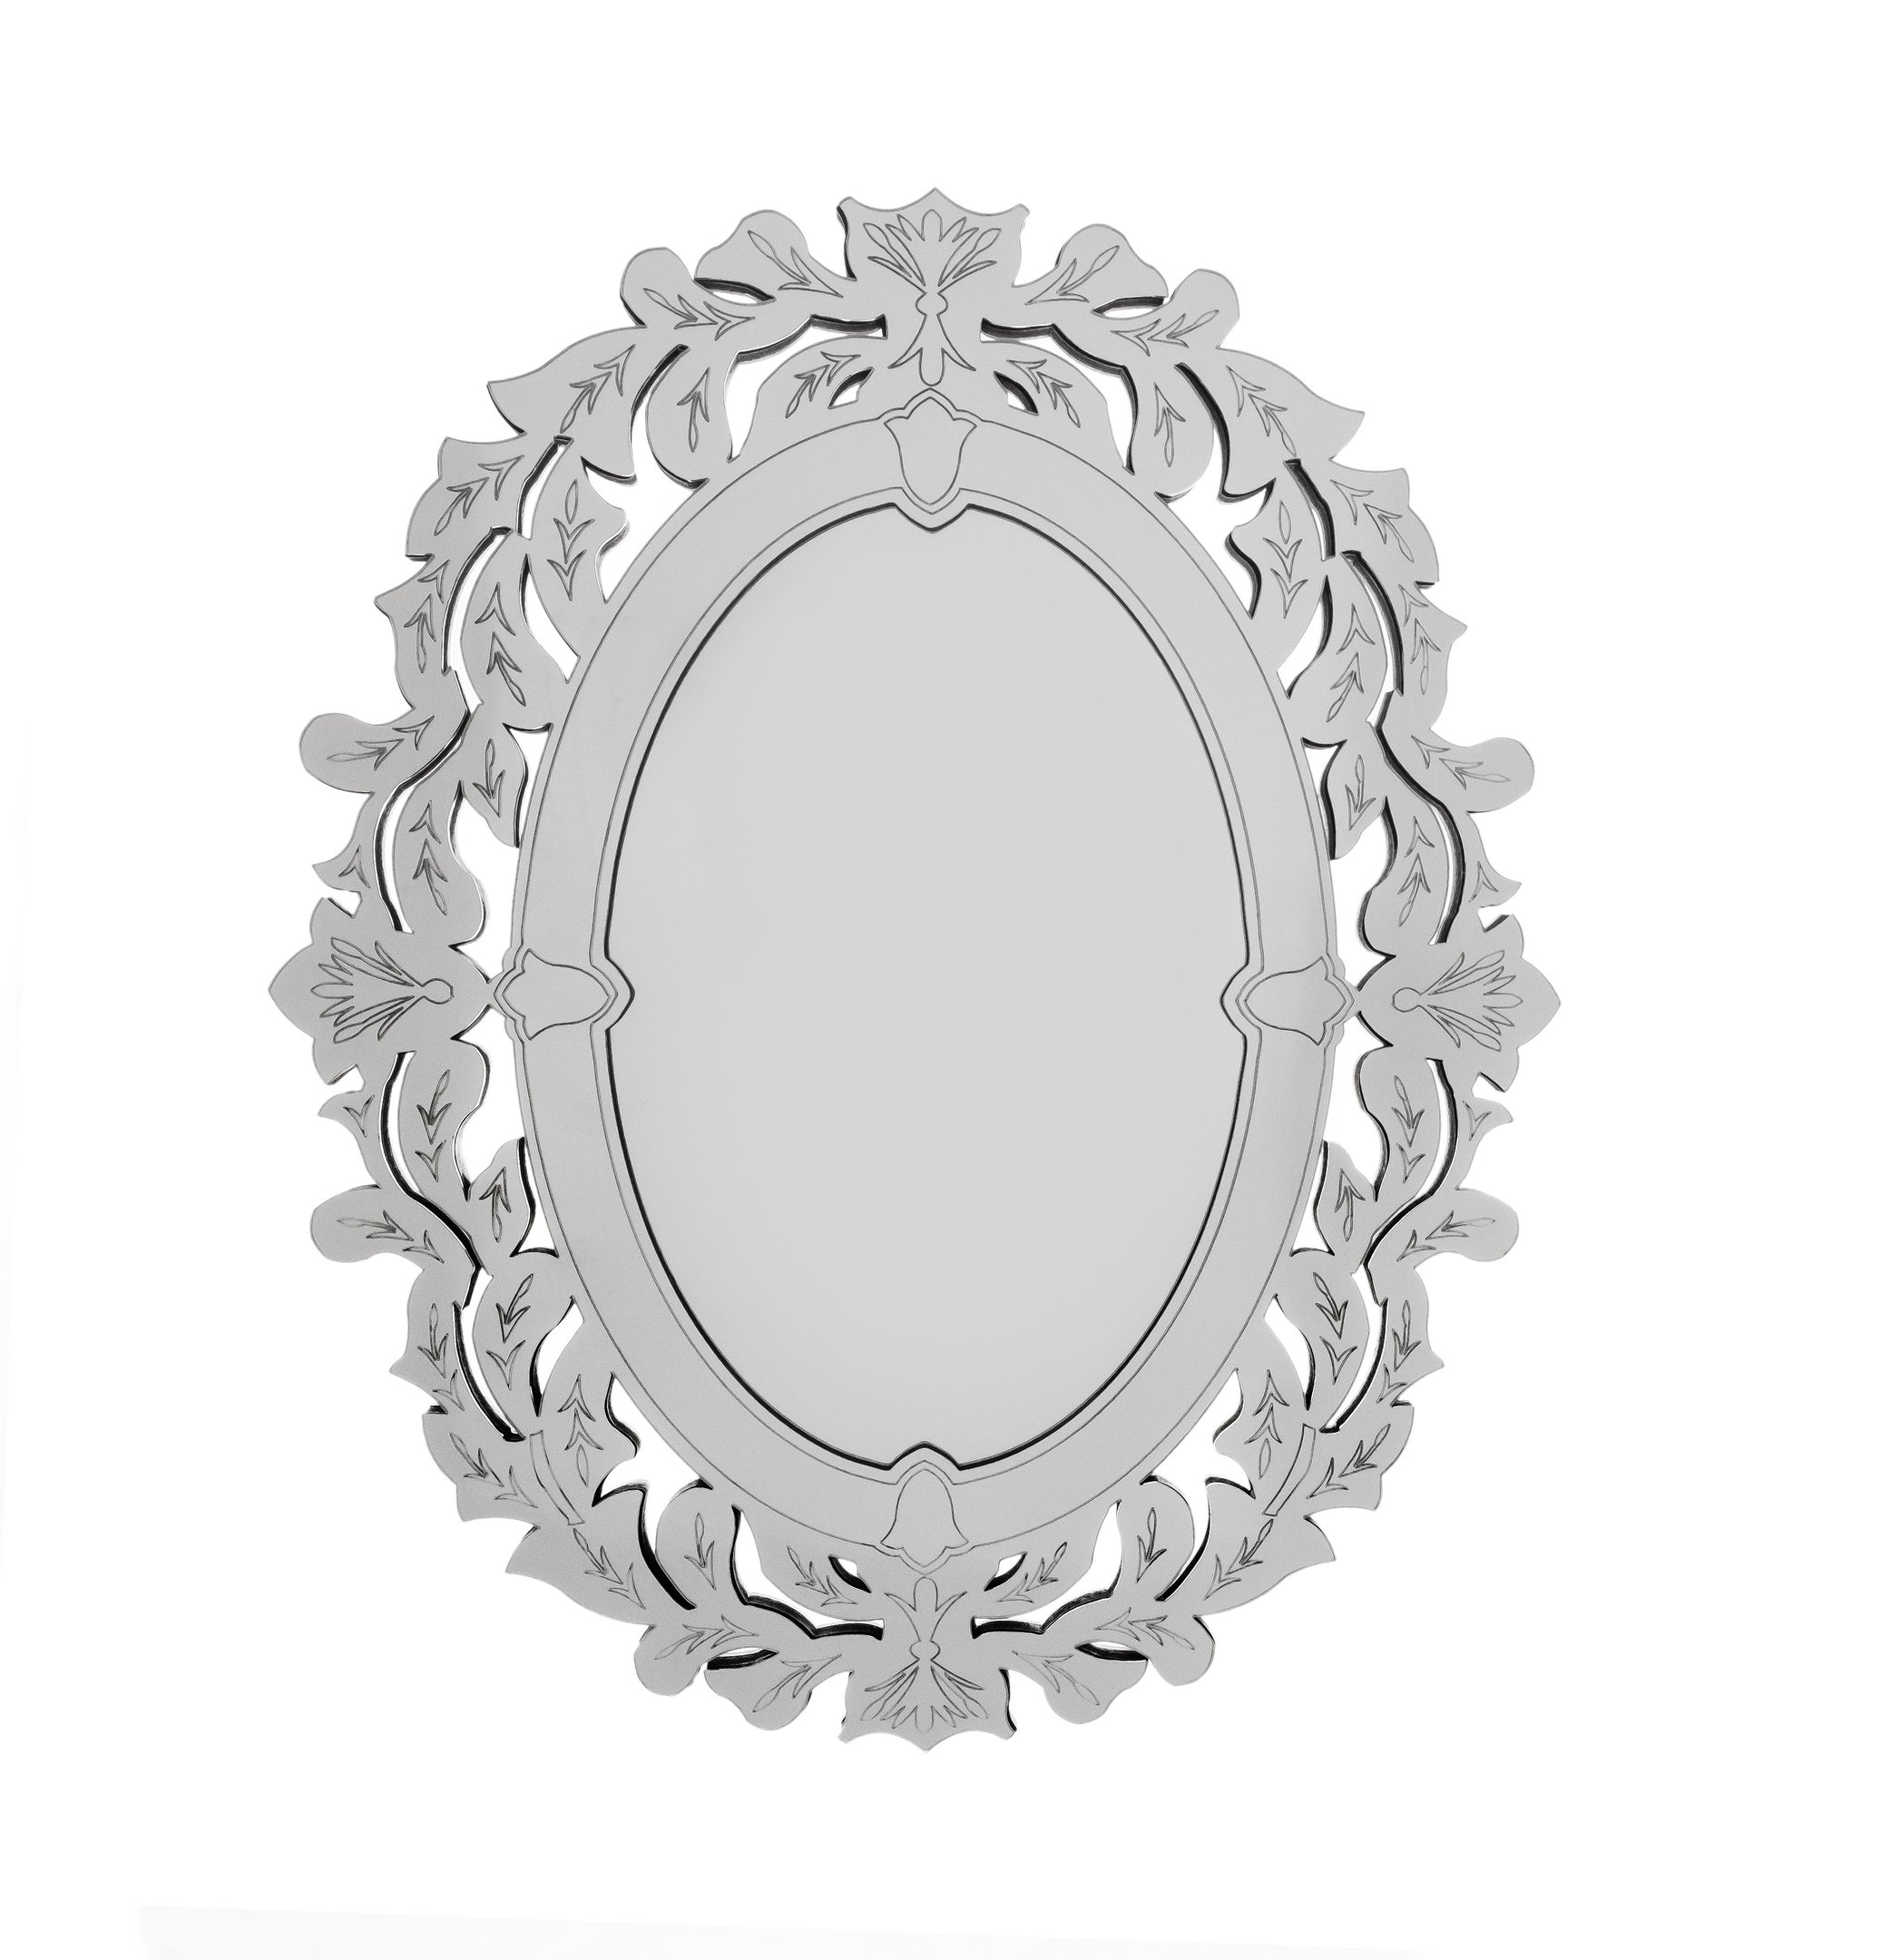 Espelho veneziano Provençal Decorativo 45x65 3882:prata